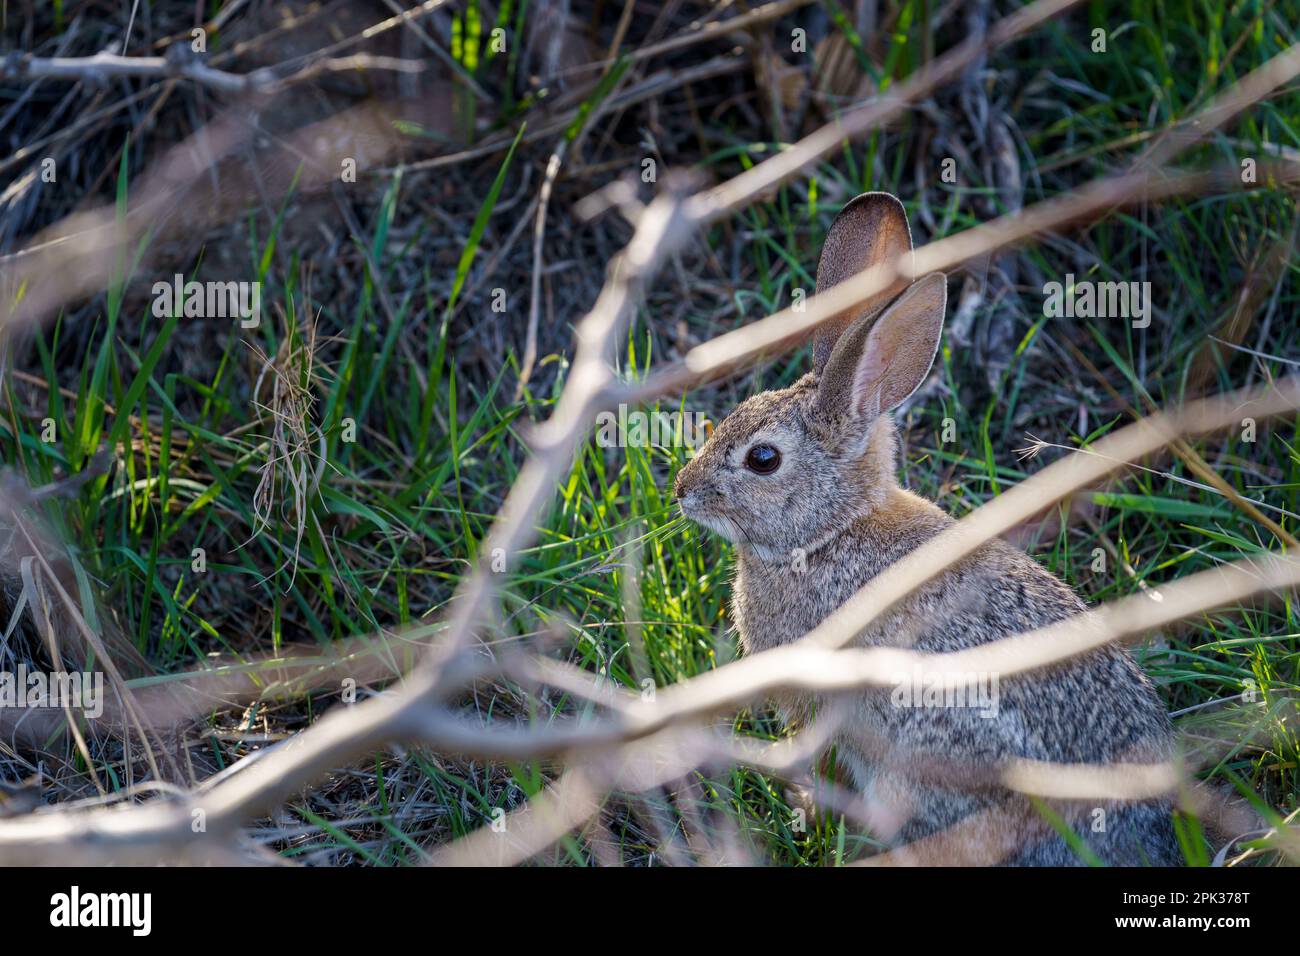 Coniglio Cottontail deserto seduto in una zona di erba verde. Incorniciato da rami di albero. Foto Stock